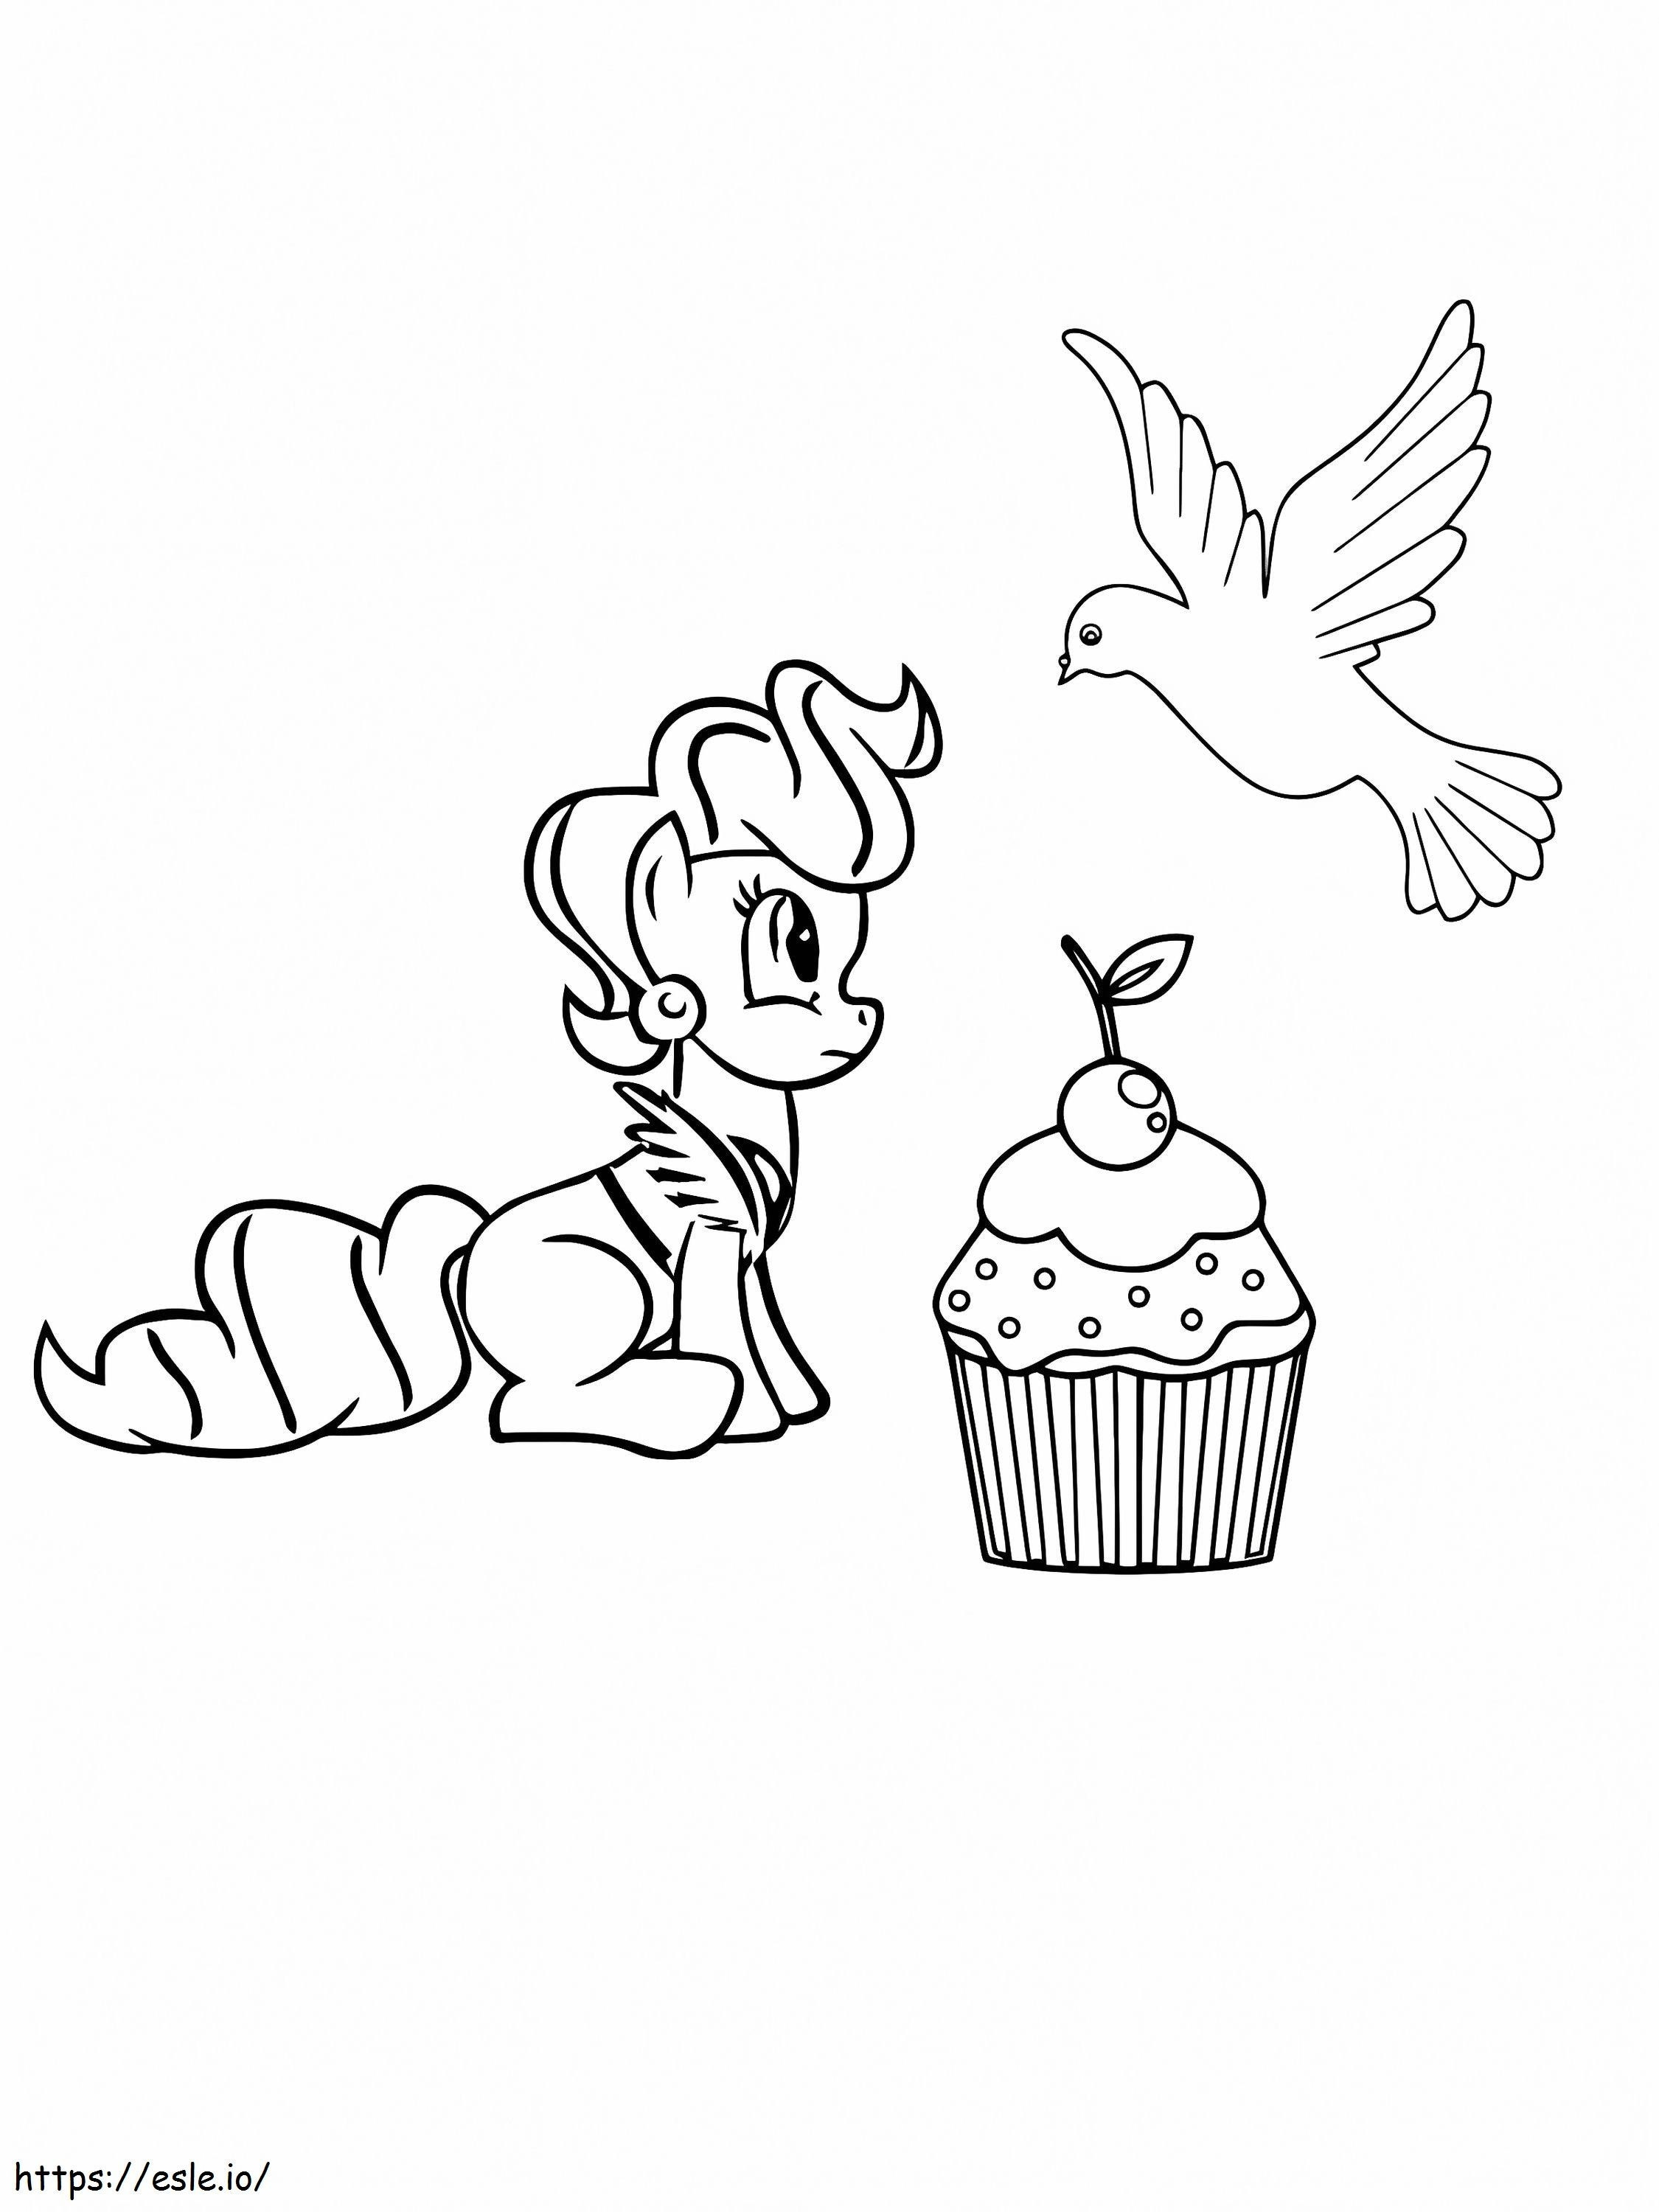 Mrs Cake Cupcake E Uccello da colorare